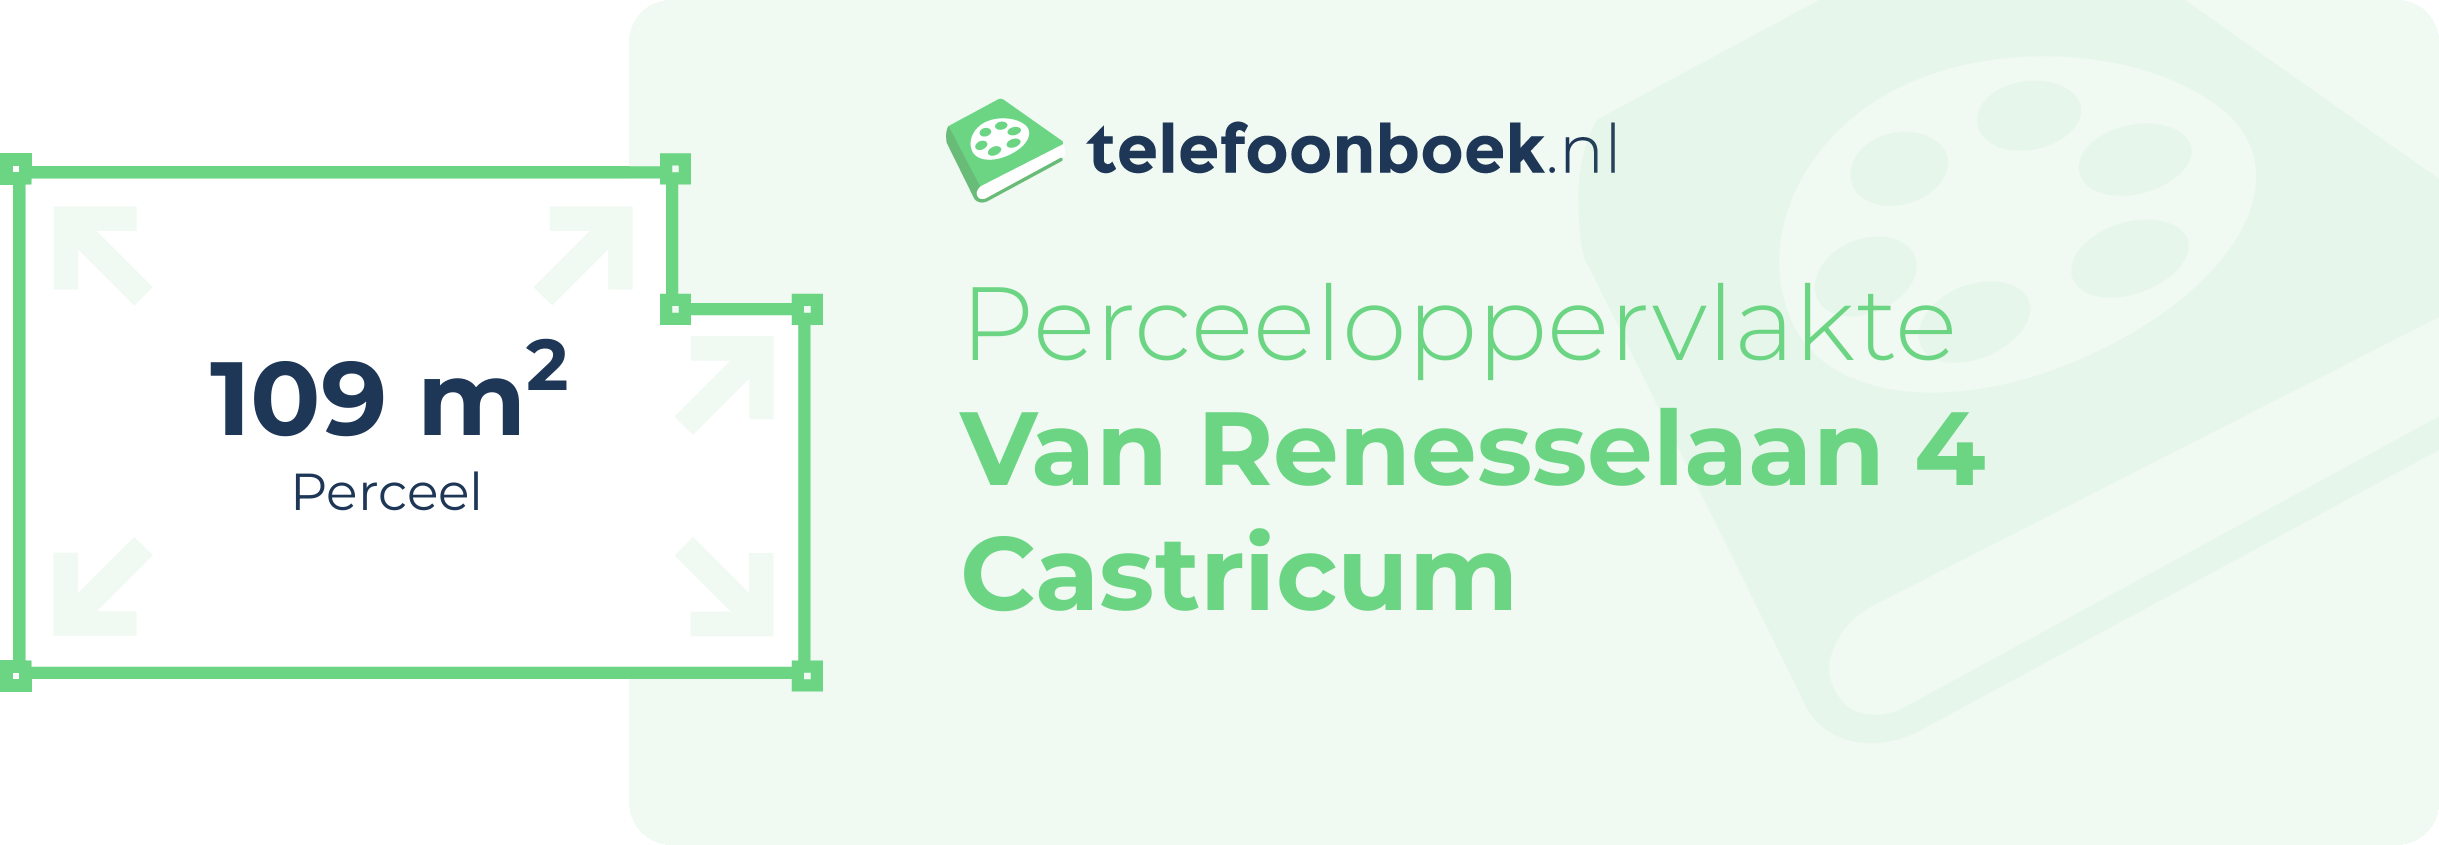 Perceeloppervlakte Van Renesselaan 4 Castricum